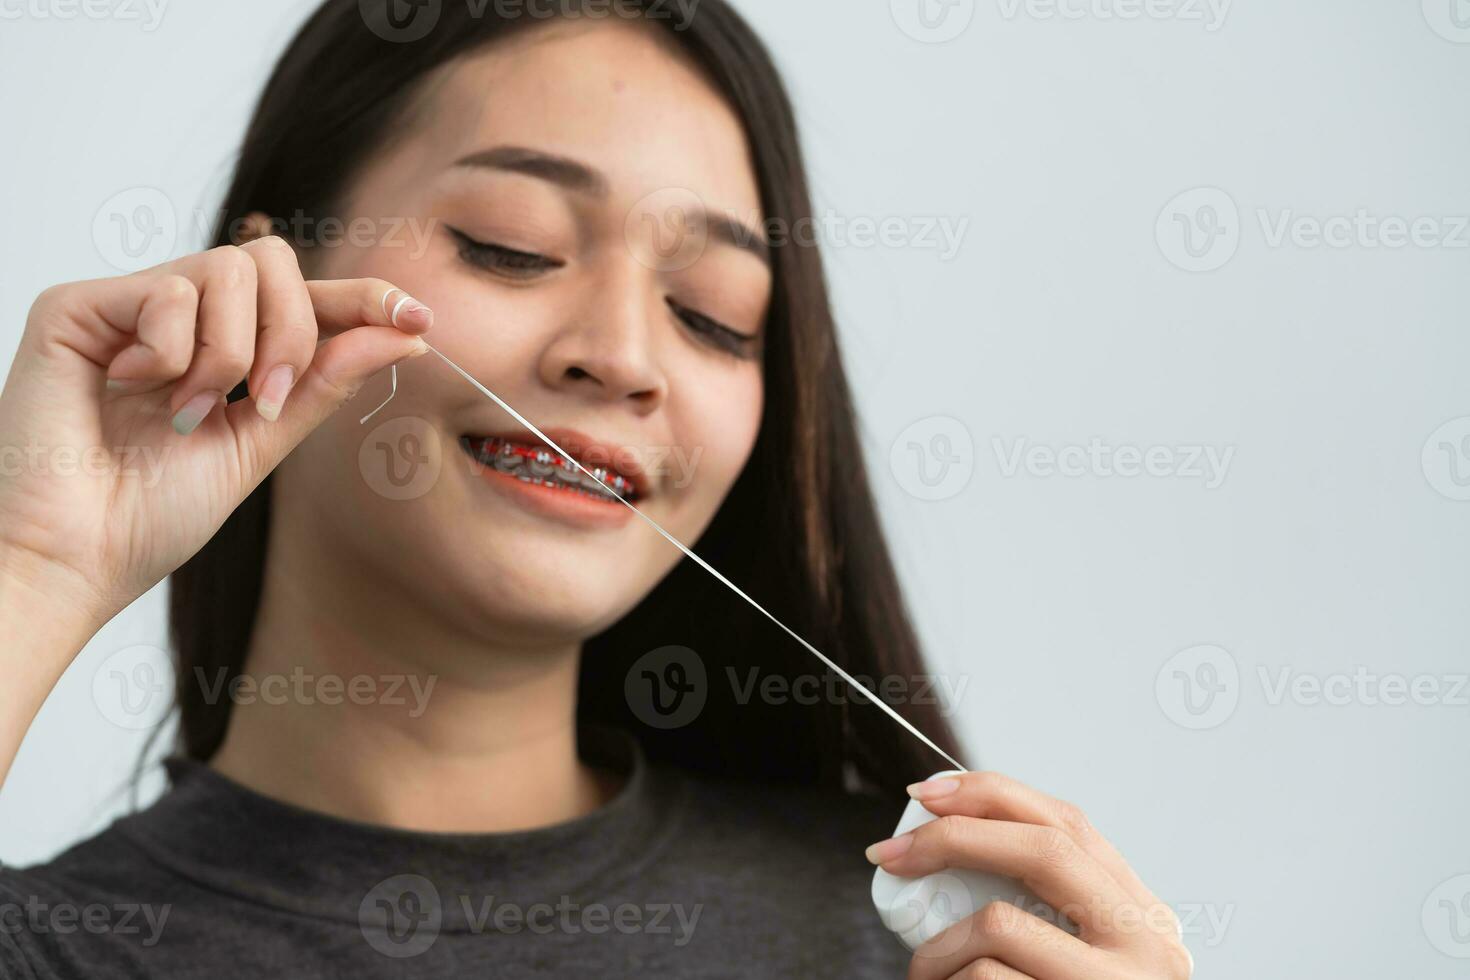 asiatisk kvinna tandställning använder sig av dental flock. tänder tandställning på de vit tänder av kvinnor till utjämna de tänder. konsol systemet i leende mun, stänga upp Foto tänder, makro skott, tandläkare hälsa begrepp.